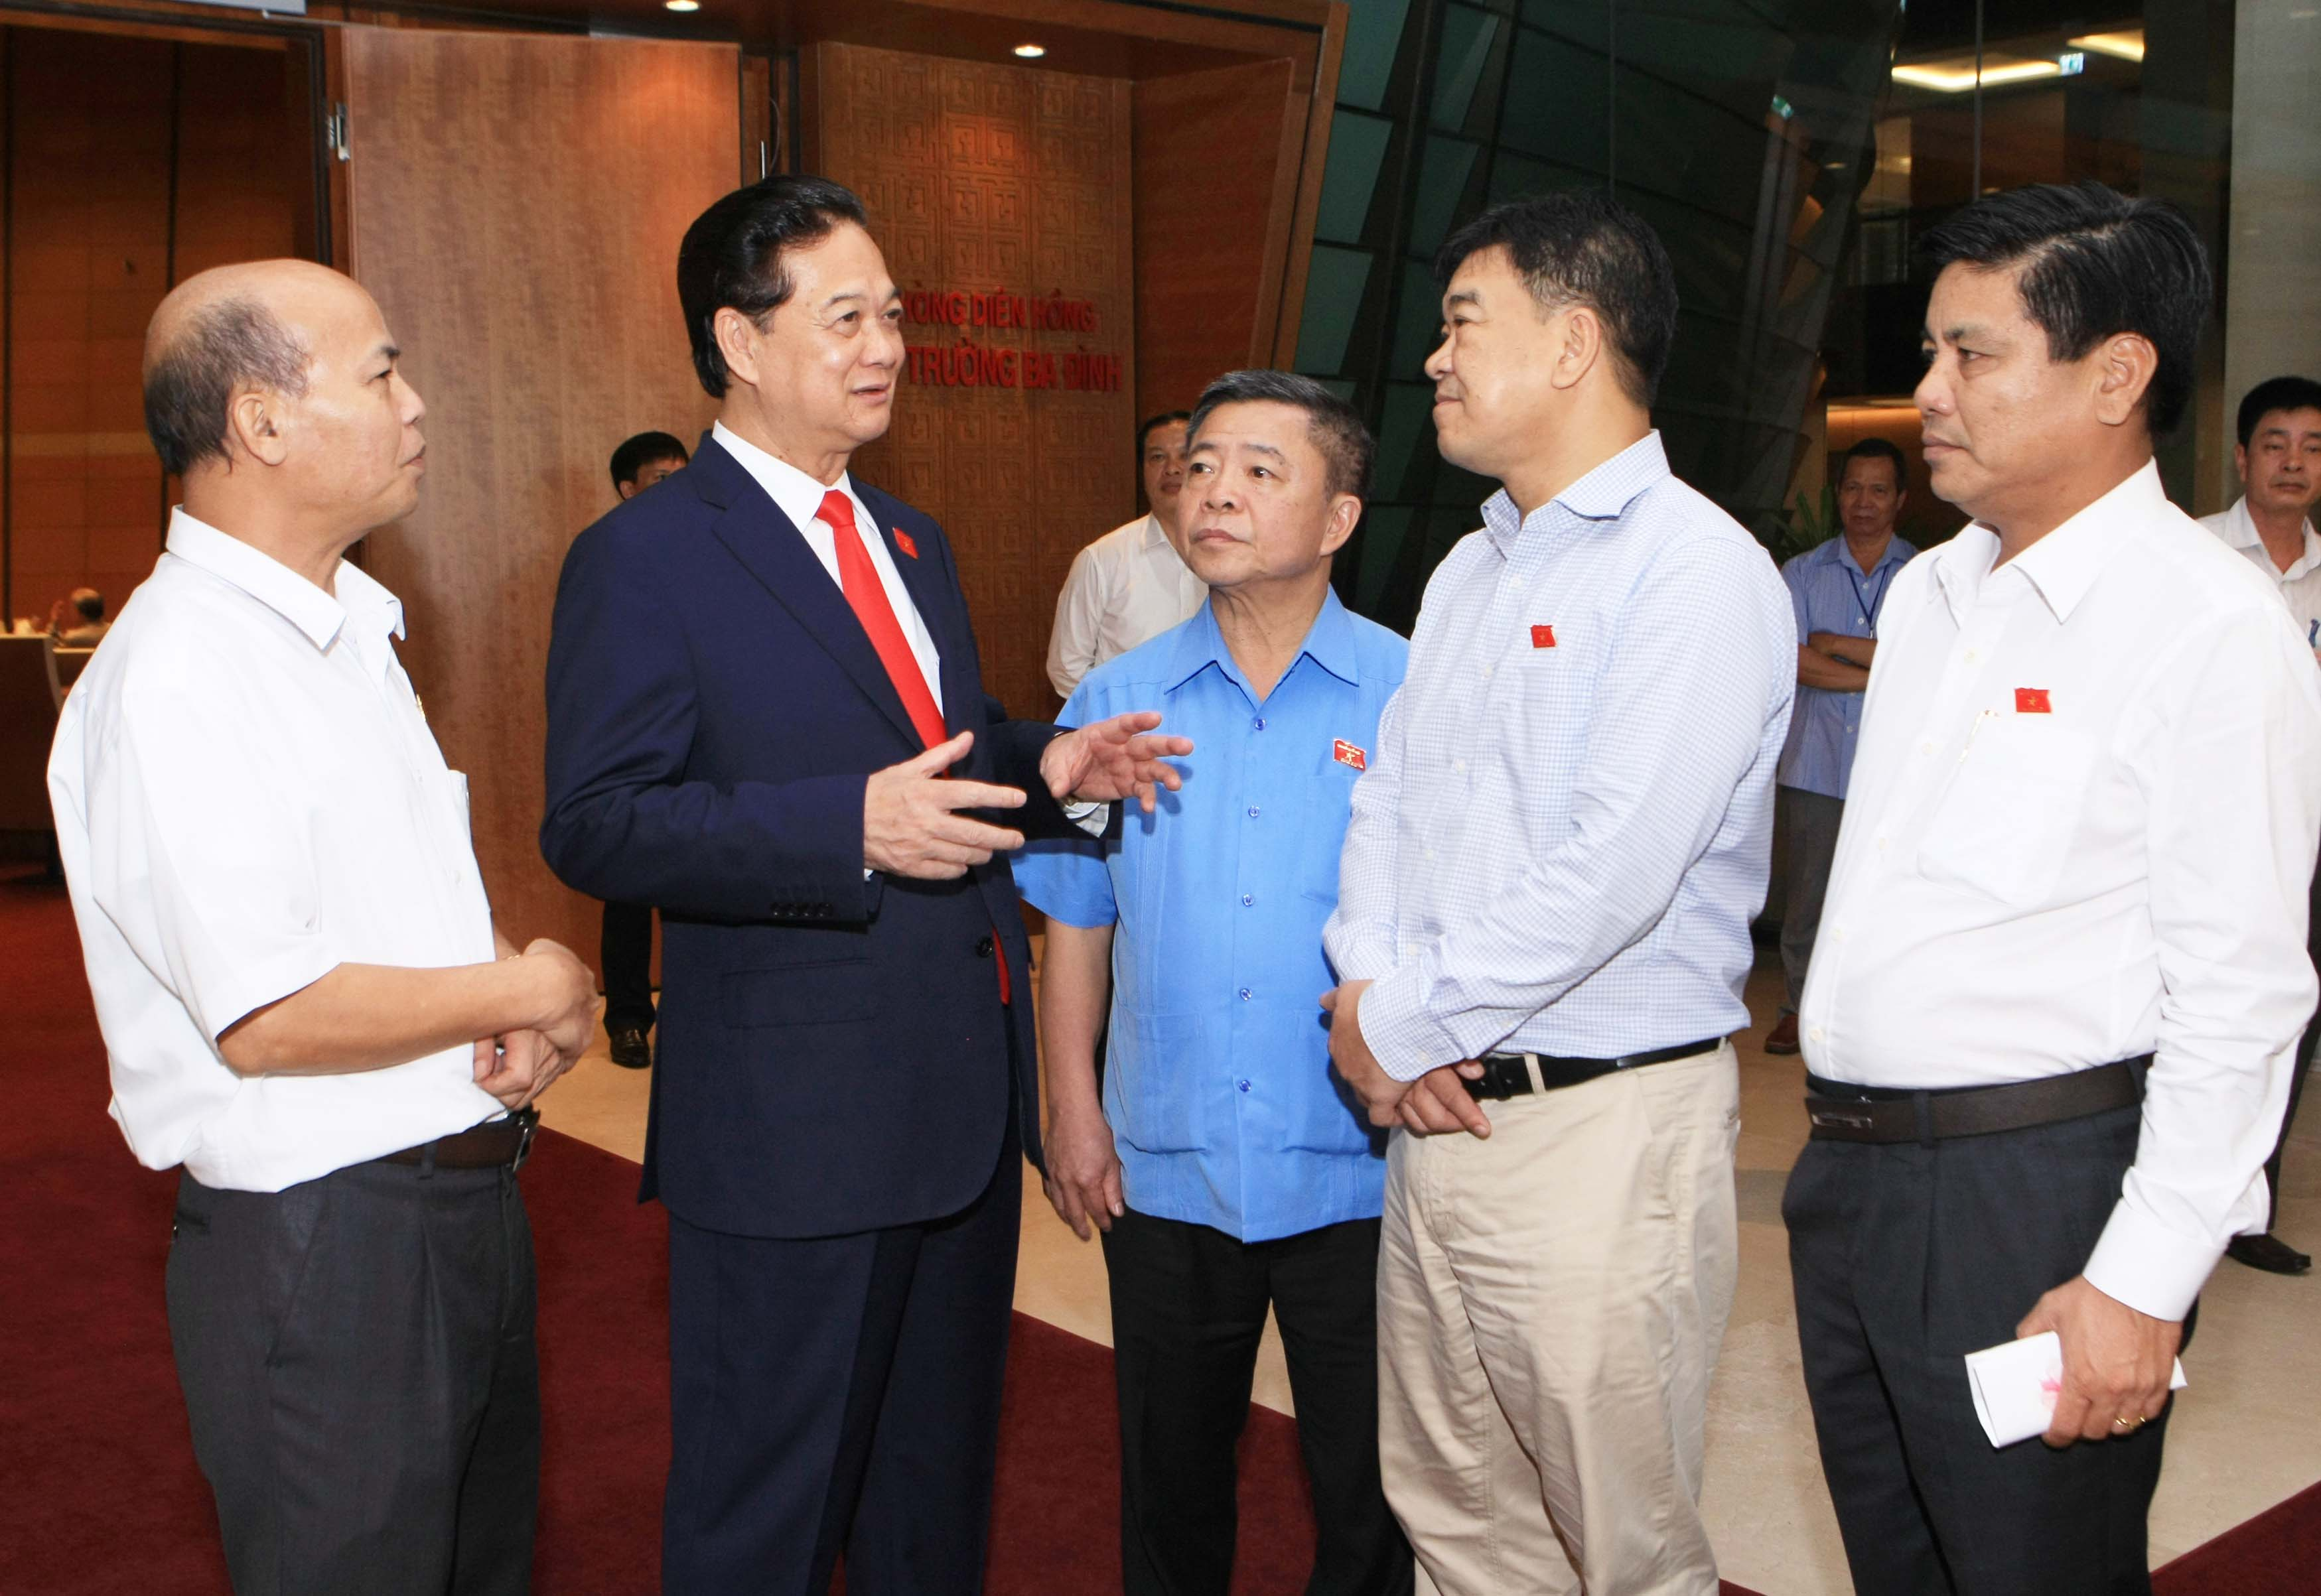 Thủ tướng Nguyễn Tấn Dũng giải đáp thêm các vấn đề đại biểu Quốc hội quan tâm trong giờ giải lao Ảnh: TTXVN